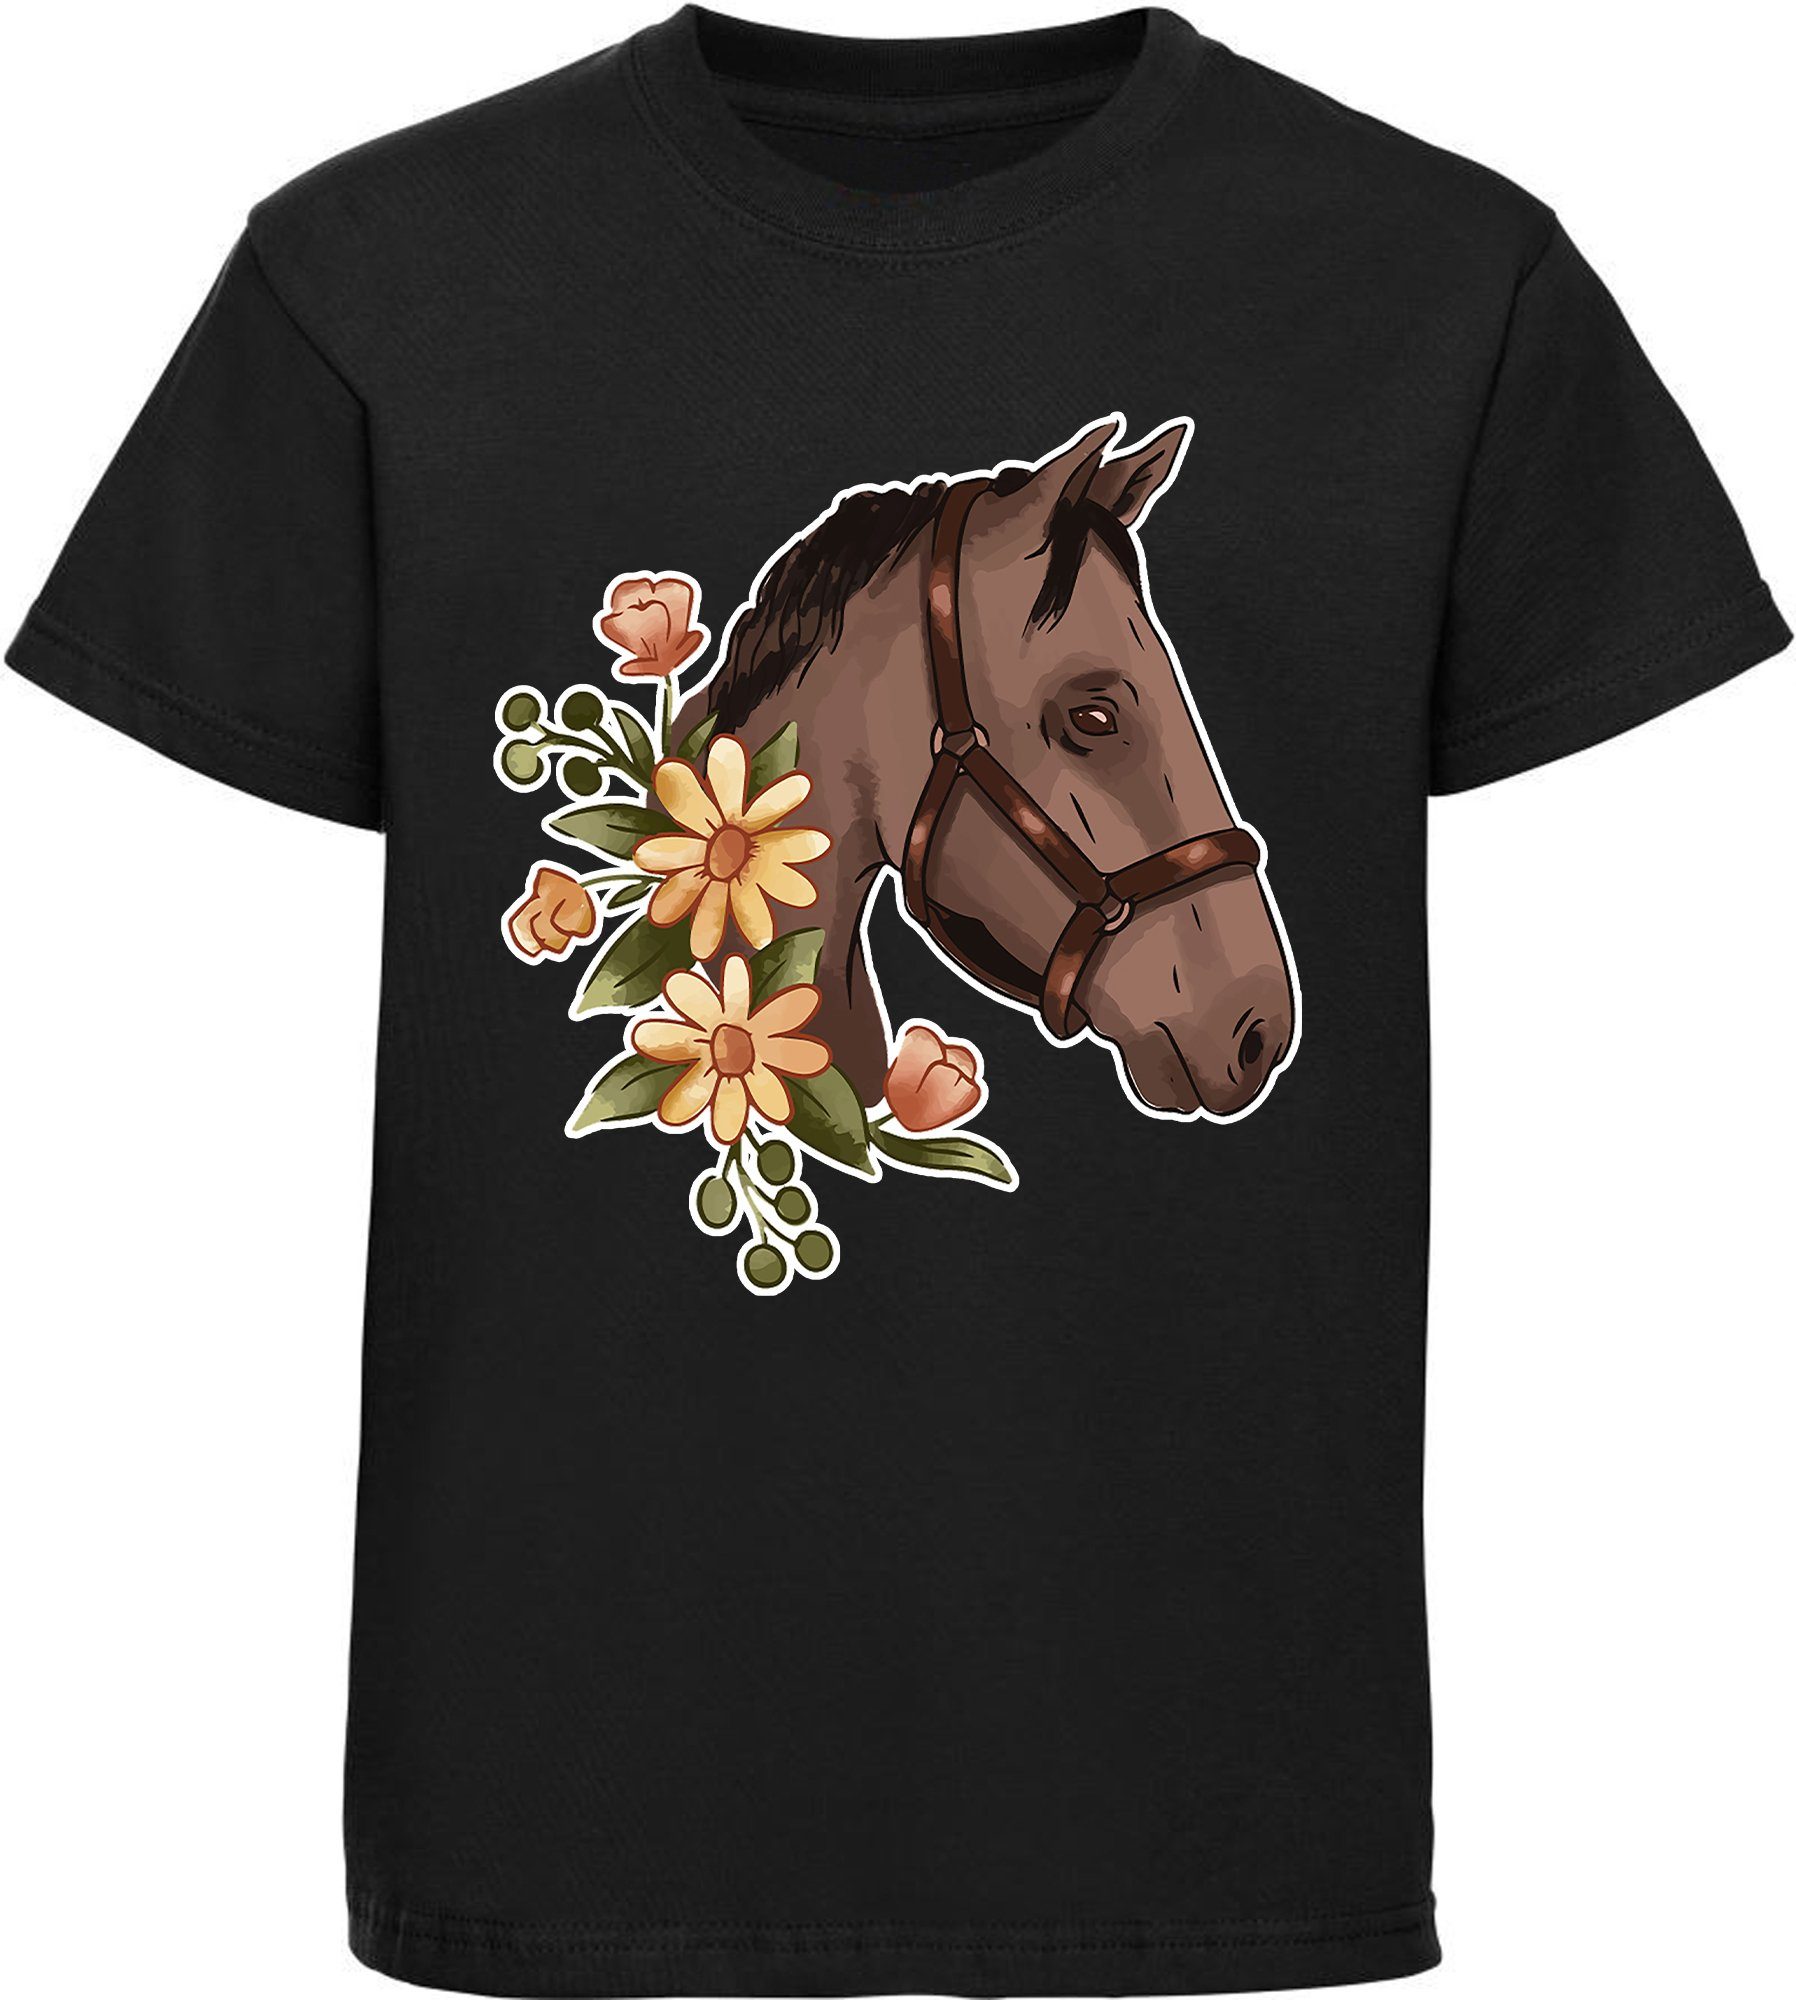 Print-Shirt Aufdruck, Blumen Baumwollshirt mit schwarz - mit Mädchen bedrucktes MyDesign24 i180 Dunkelbrauner T-Shirt Pferdekopf